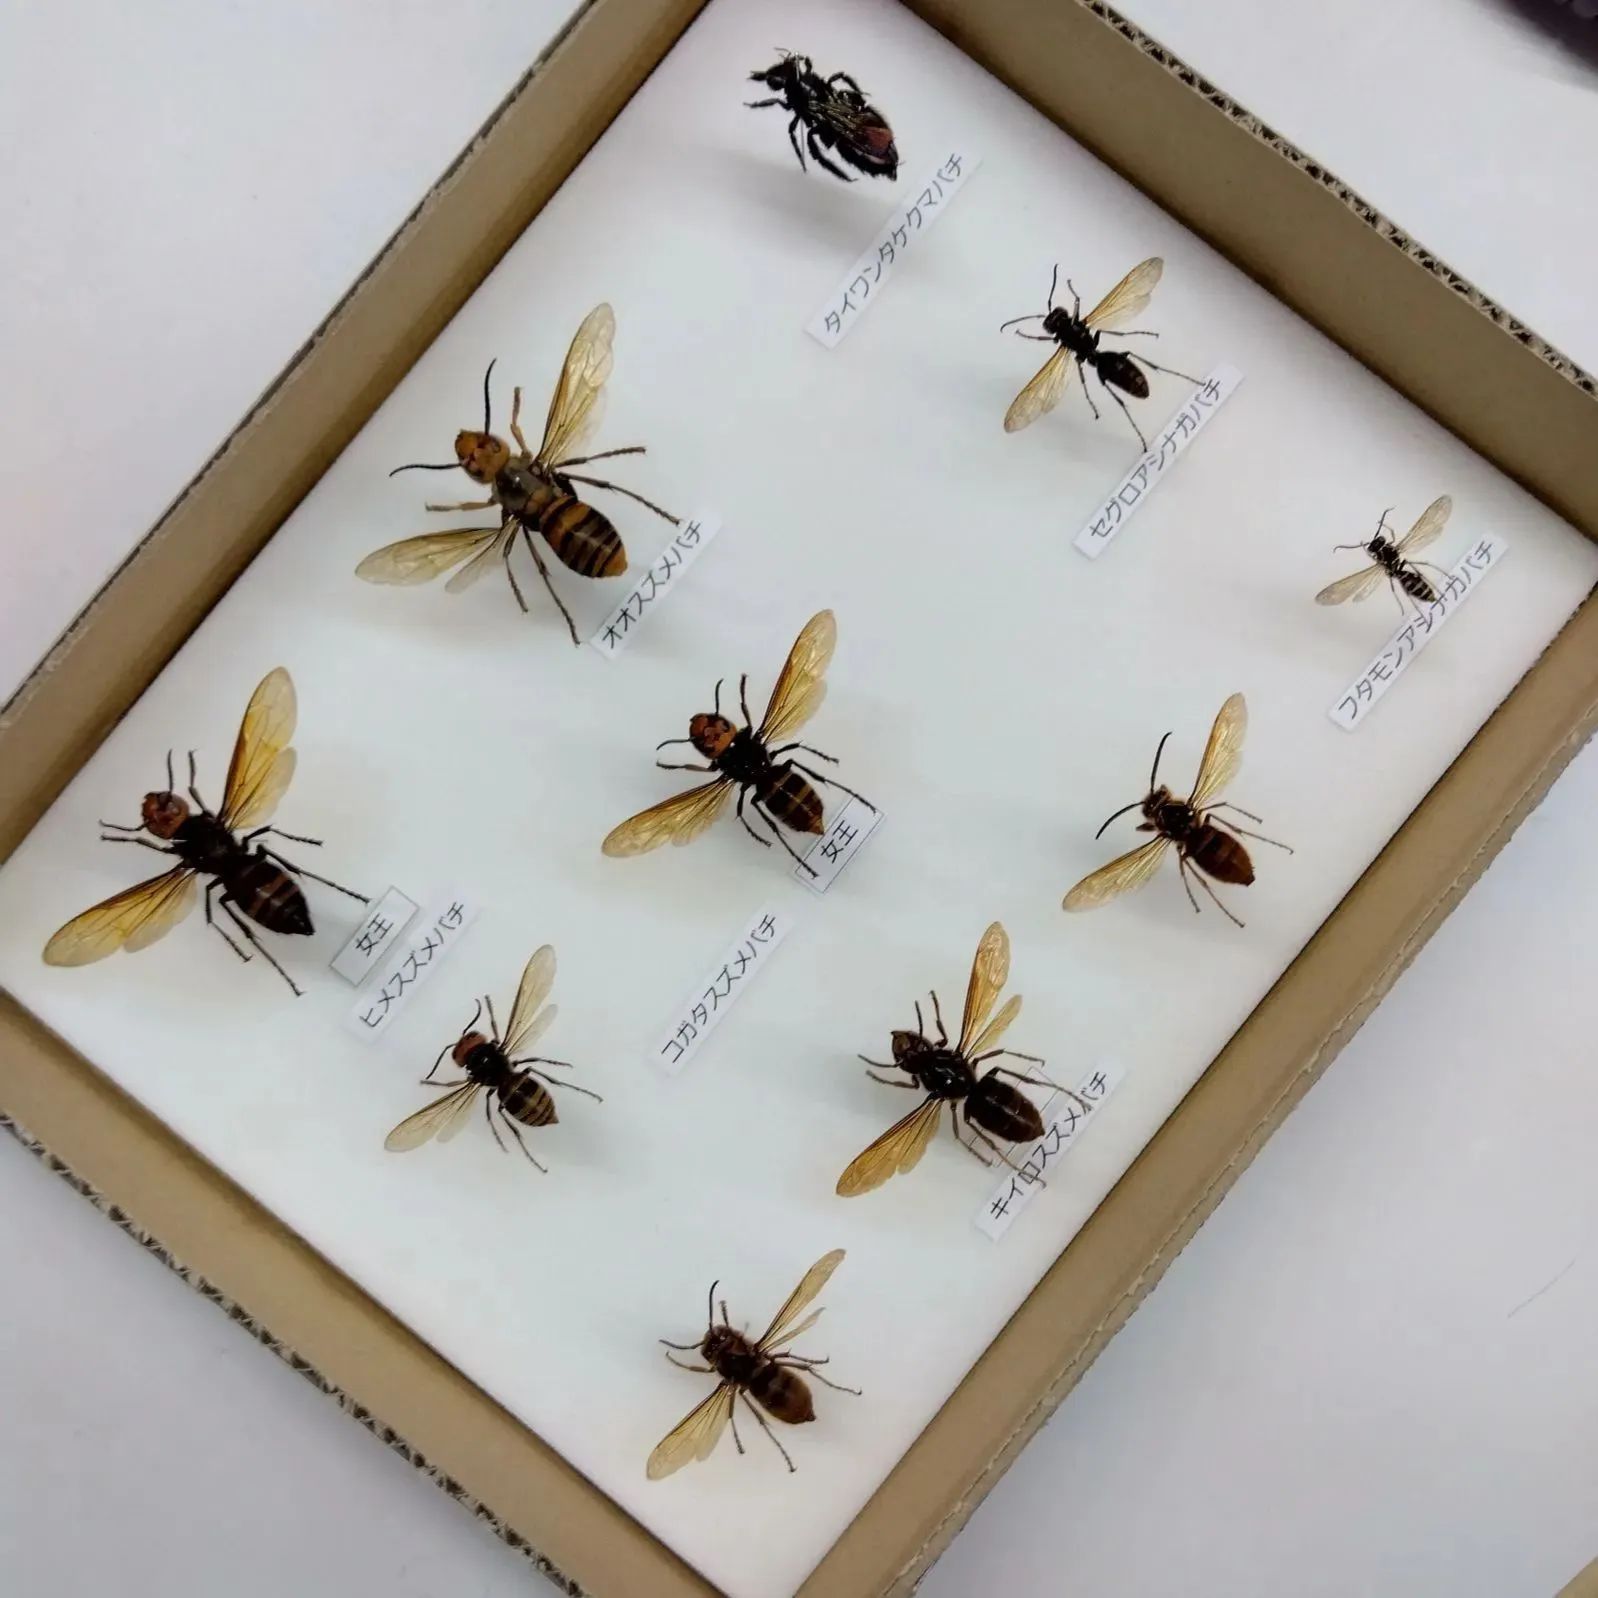 クマバチ オオスズメバチ 女王蜂 桐箱入り - 標本